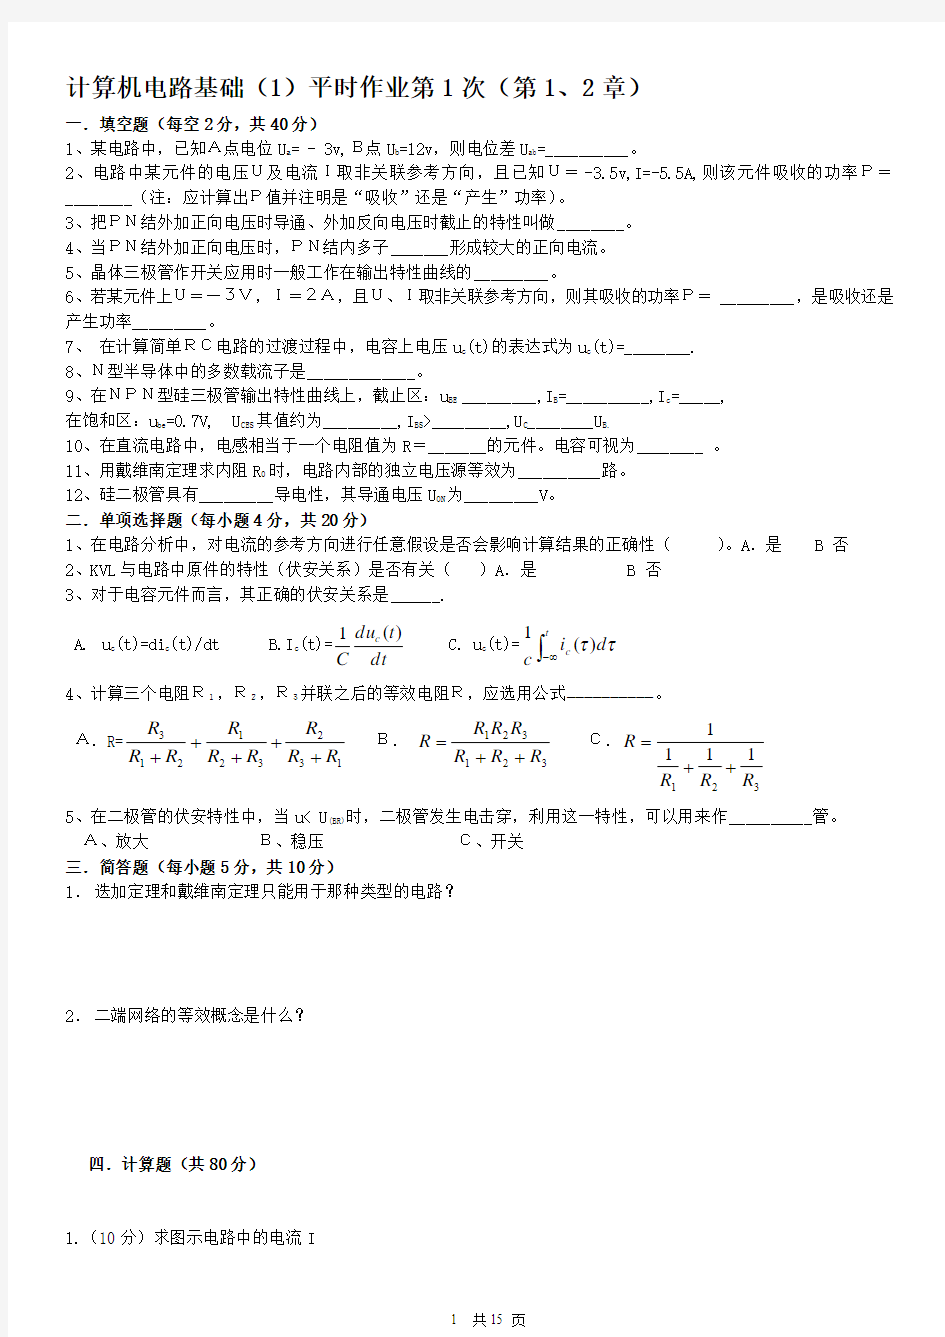 计算机电路基础(1)平时作业1-4